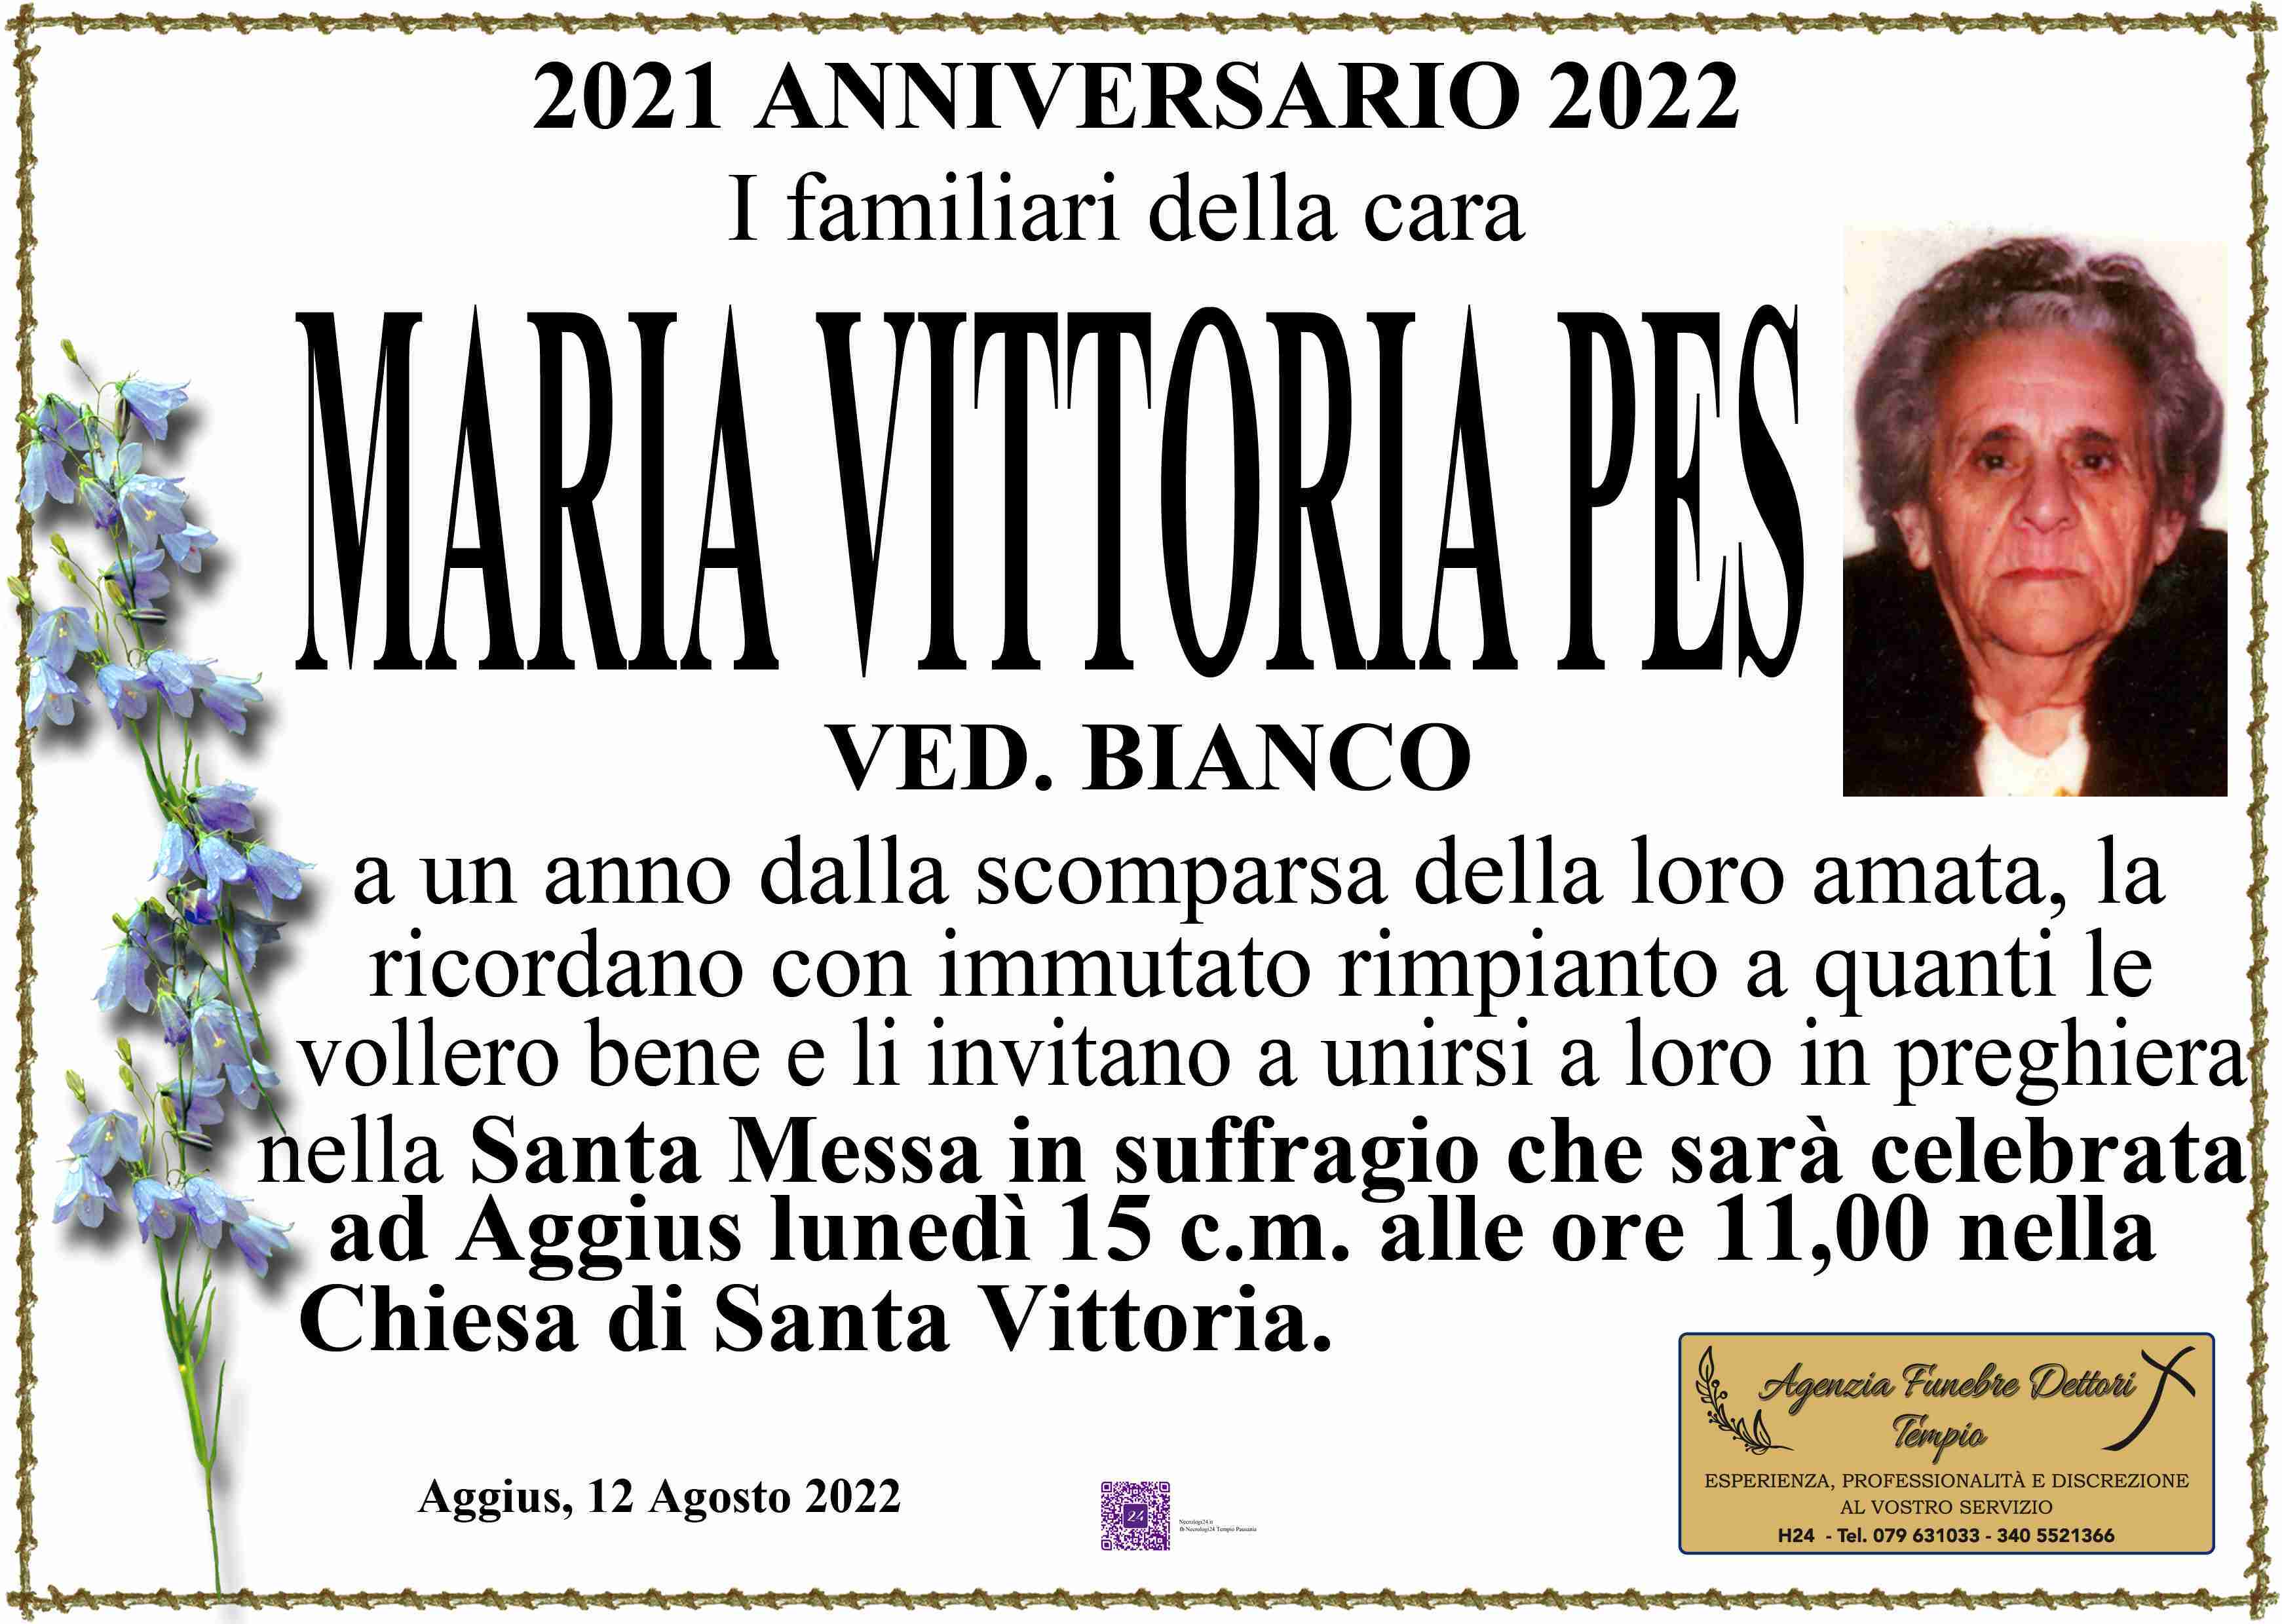 Maria Vittoria Pes